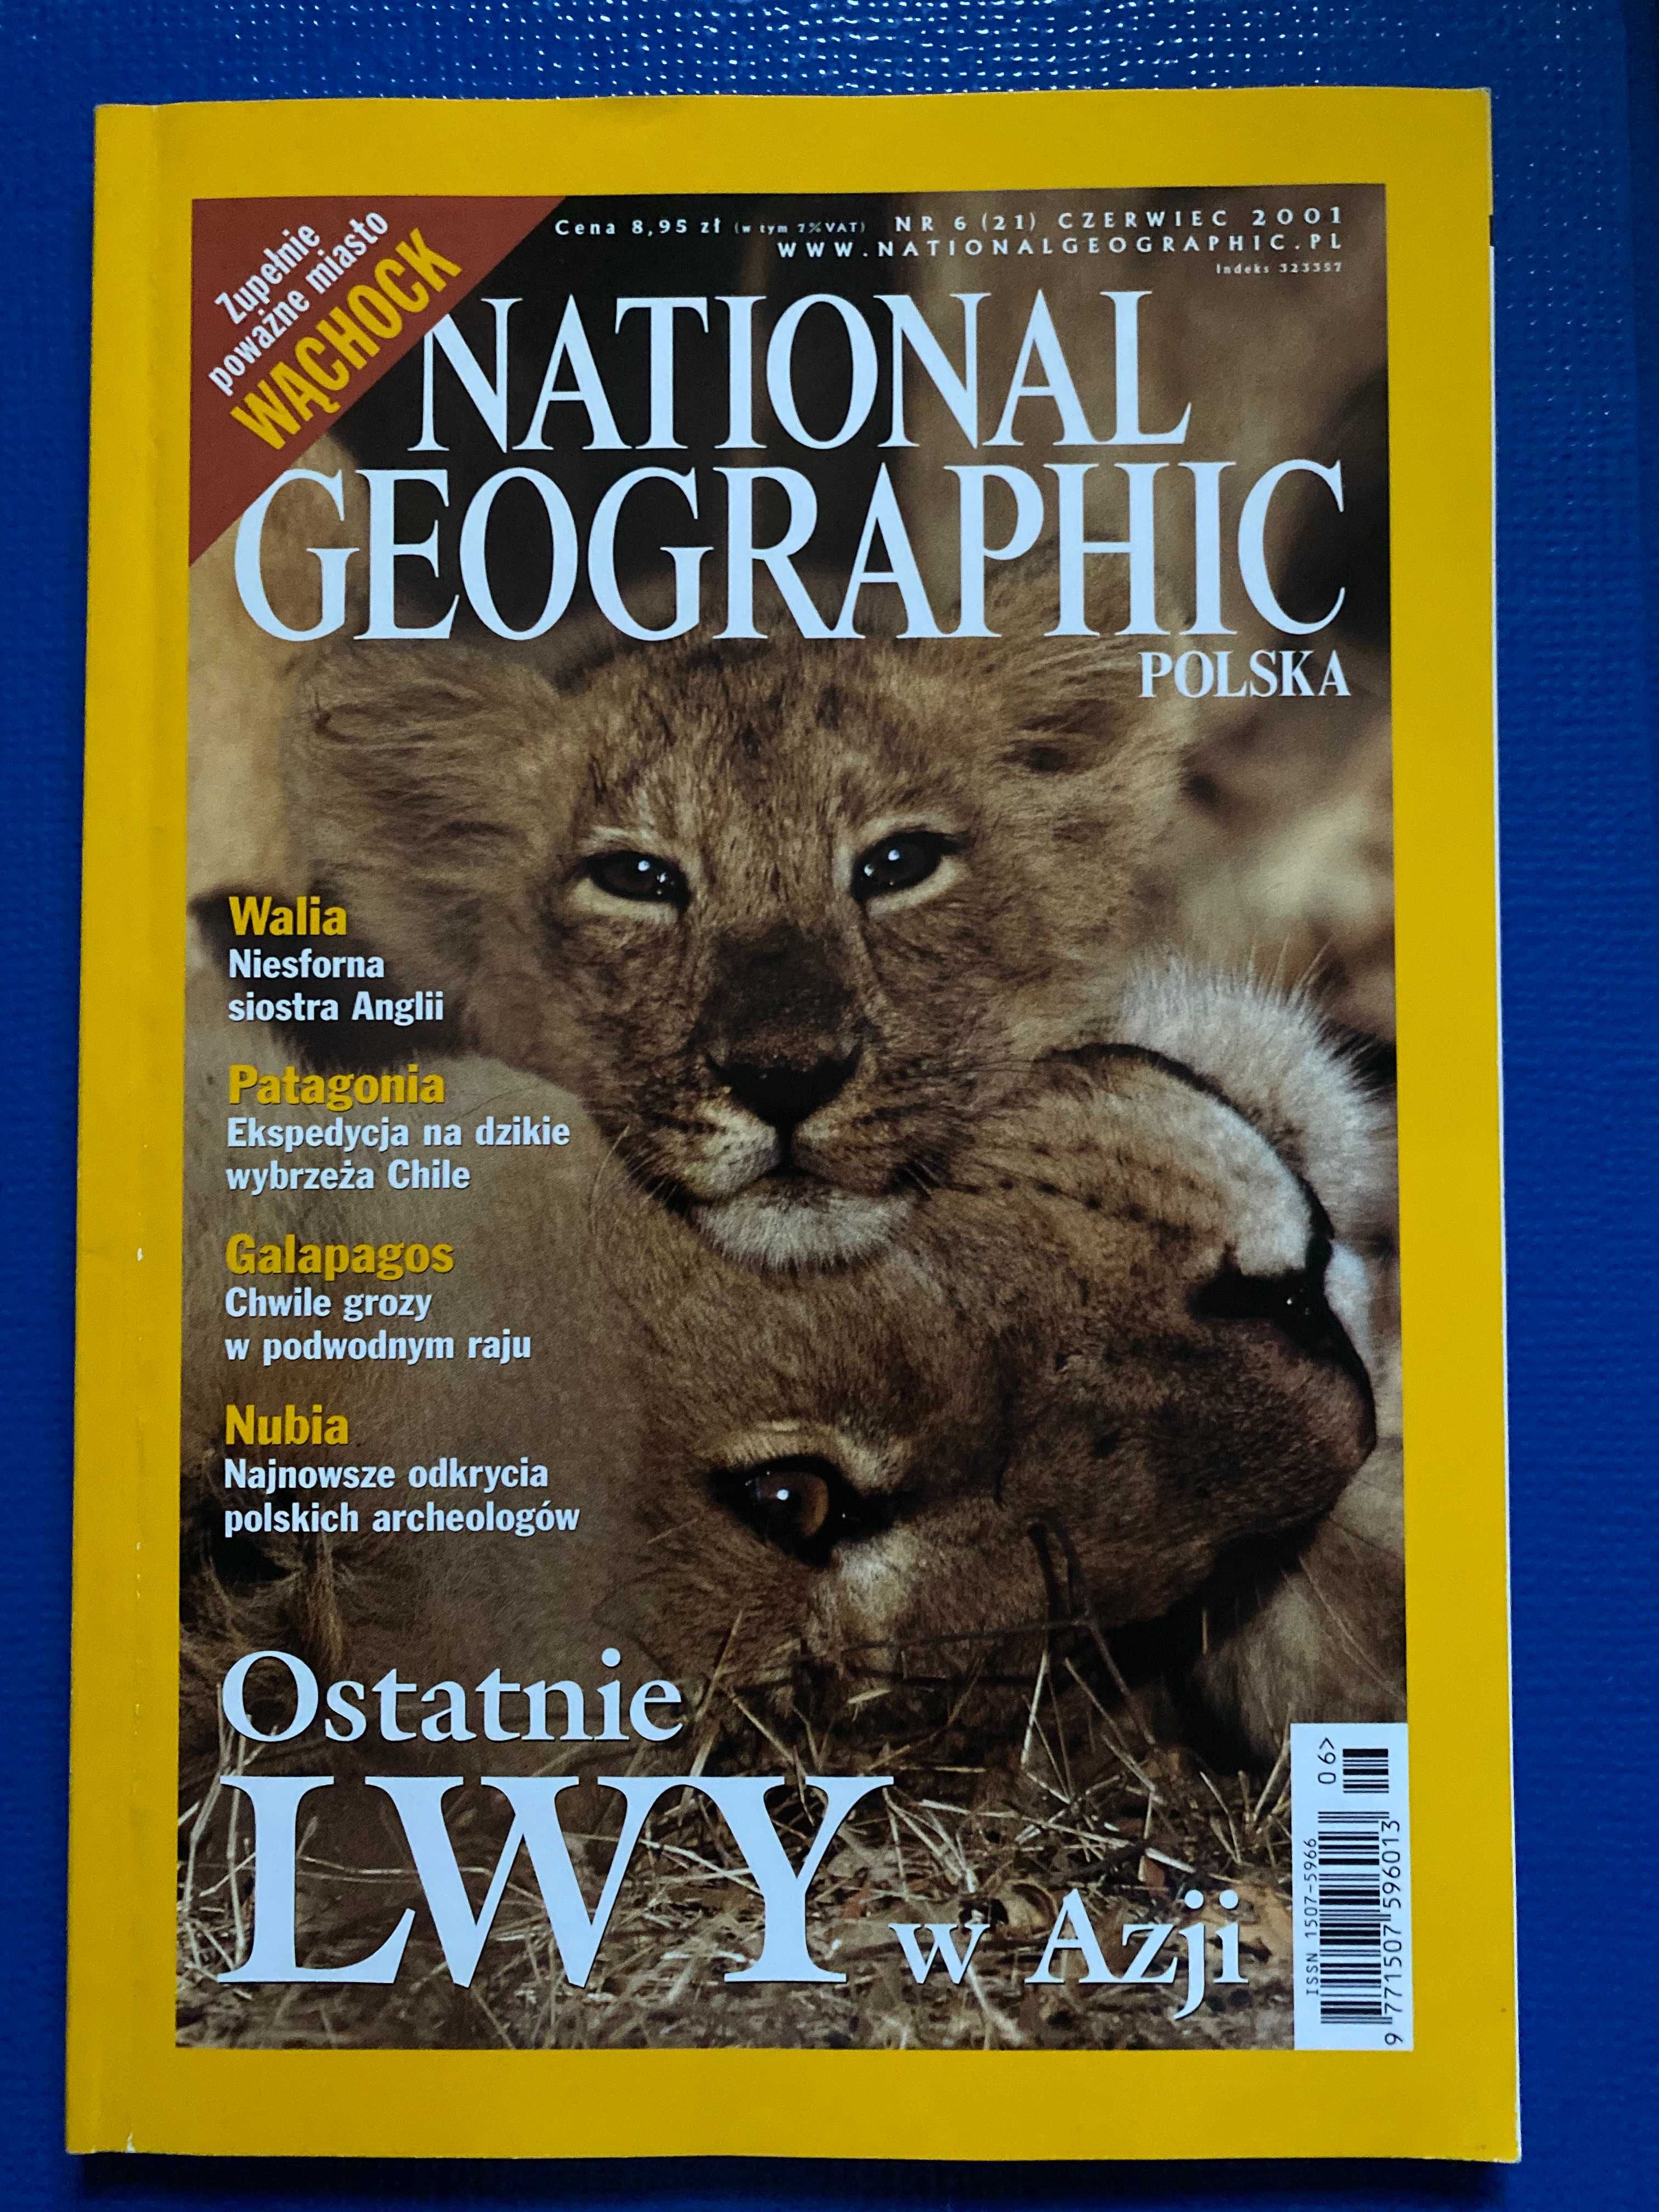 National Geographic-Polska,wyd czerwiec 2001